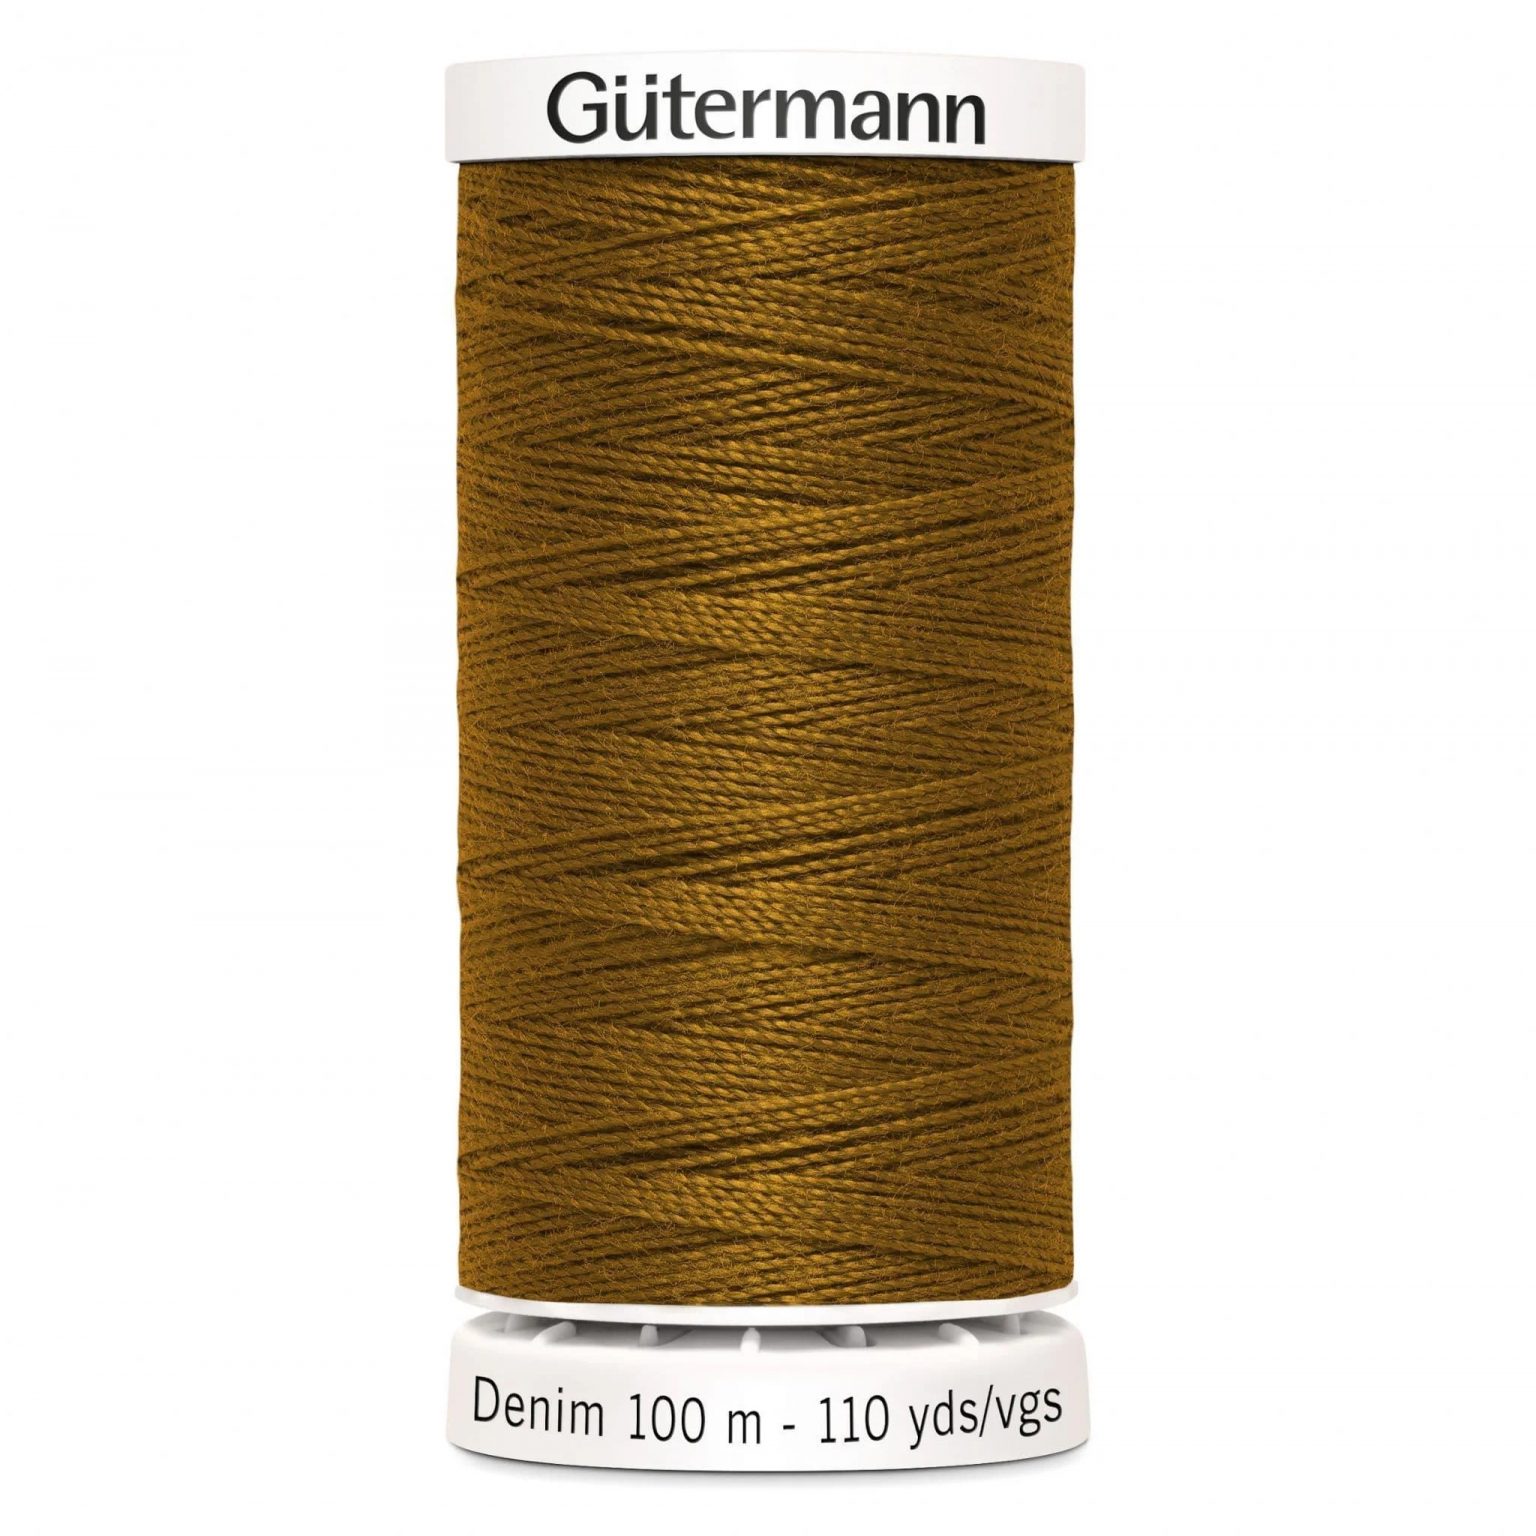 Gutermann Denim Sewing Thread in Toffee 2040